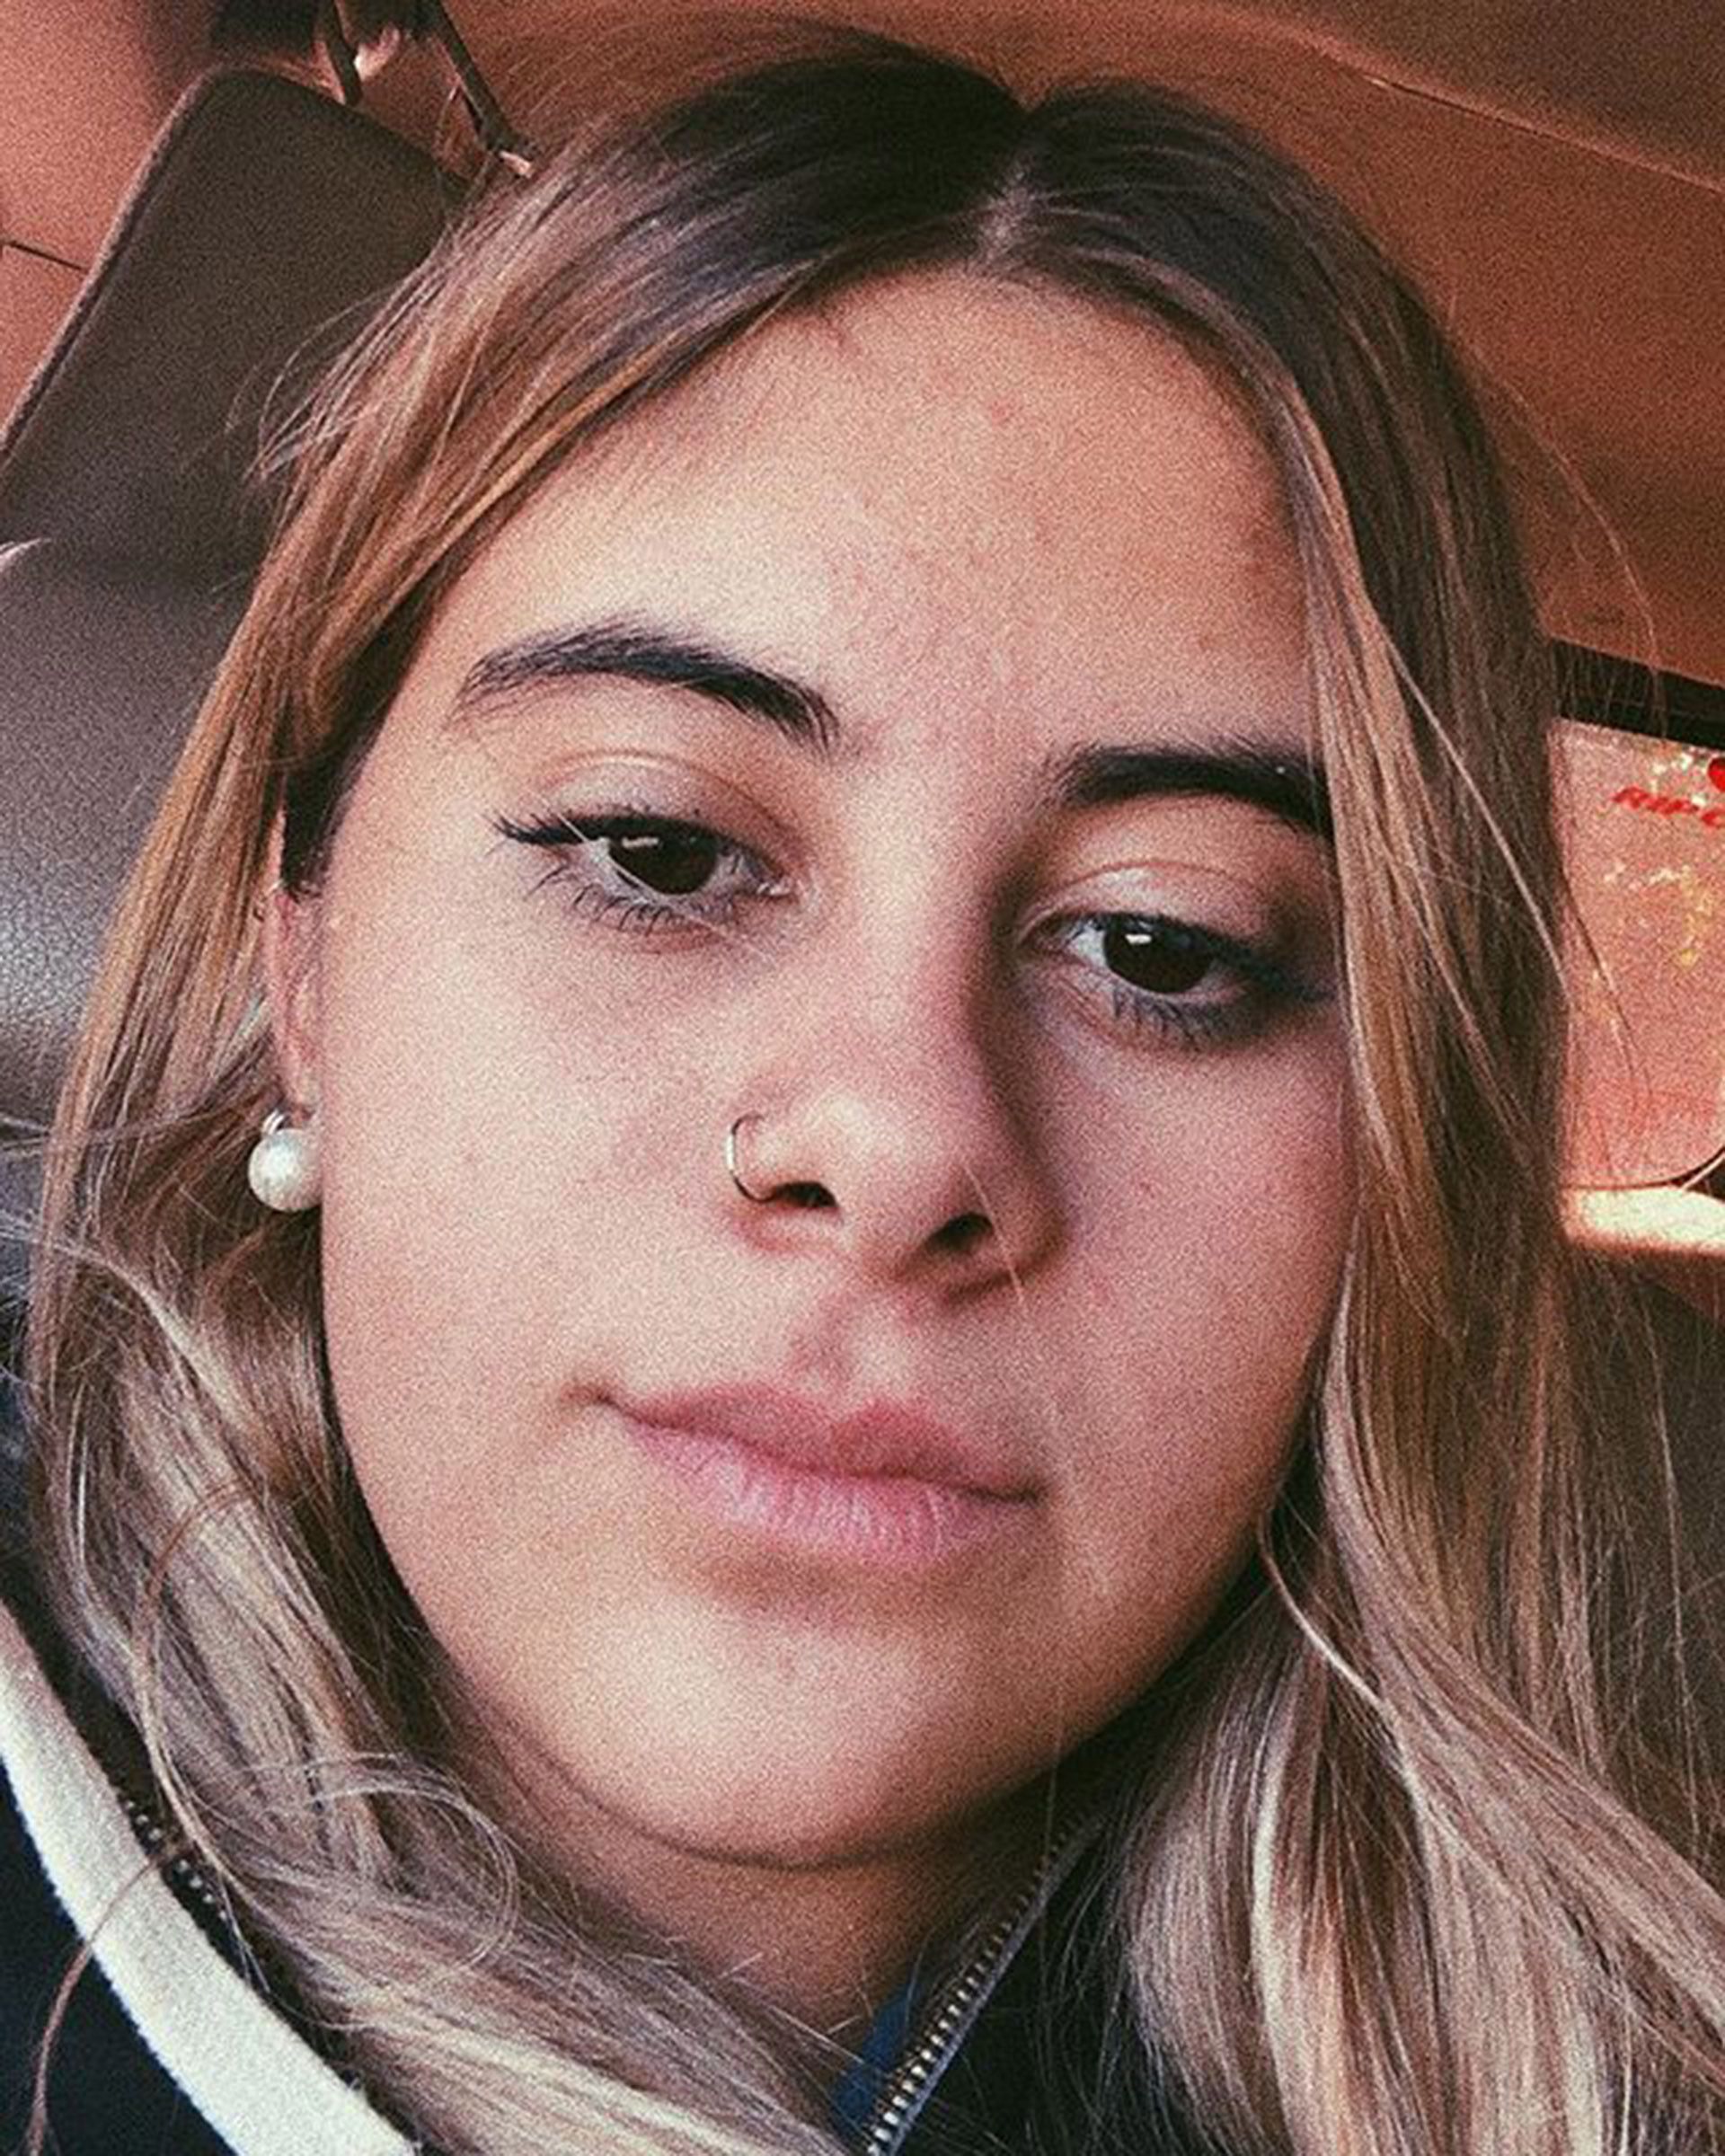 La joven de 17 años tenía un perfil muy activo en las redes sociales (Instagram: @melllchu)